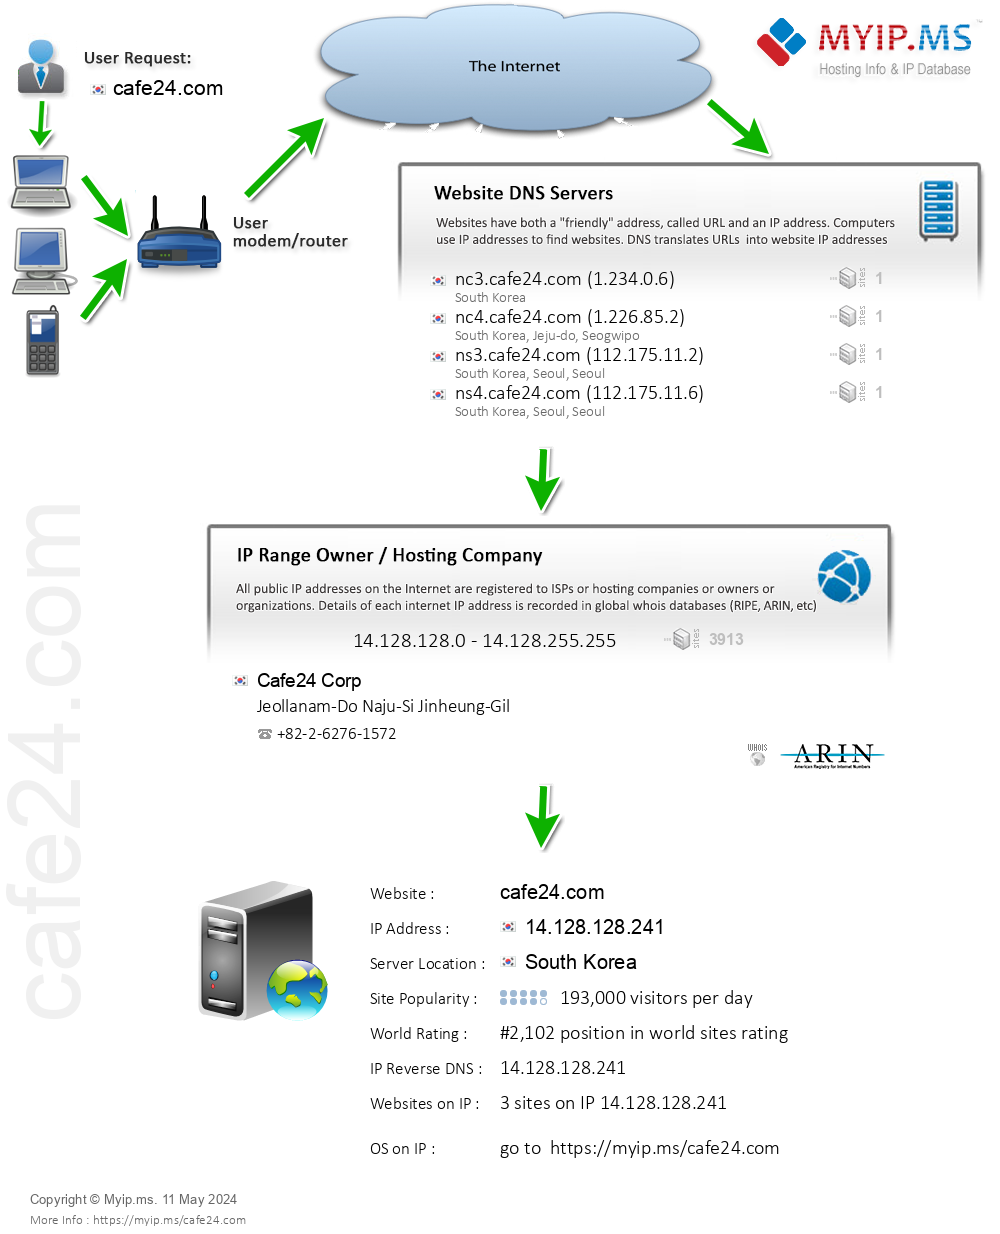 Cafe24.com - Website Hosting Visual IP Diagram